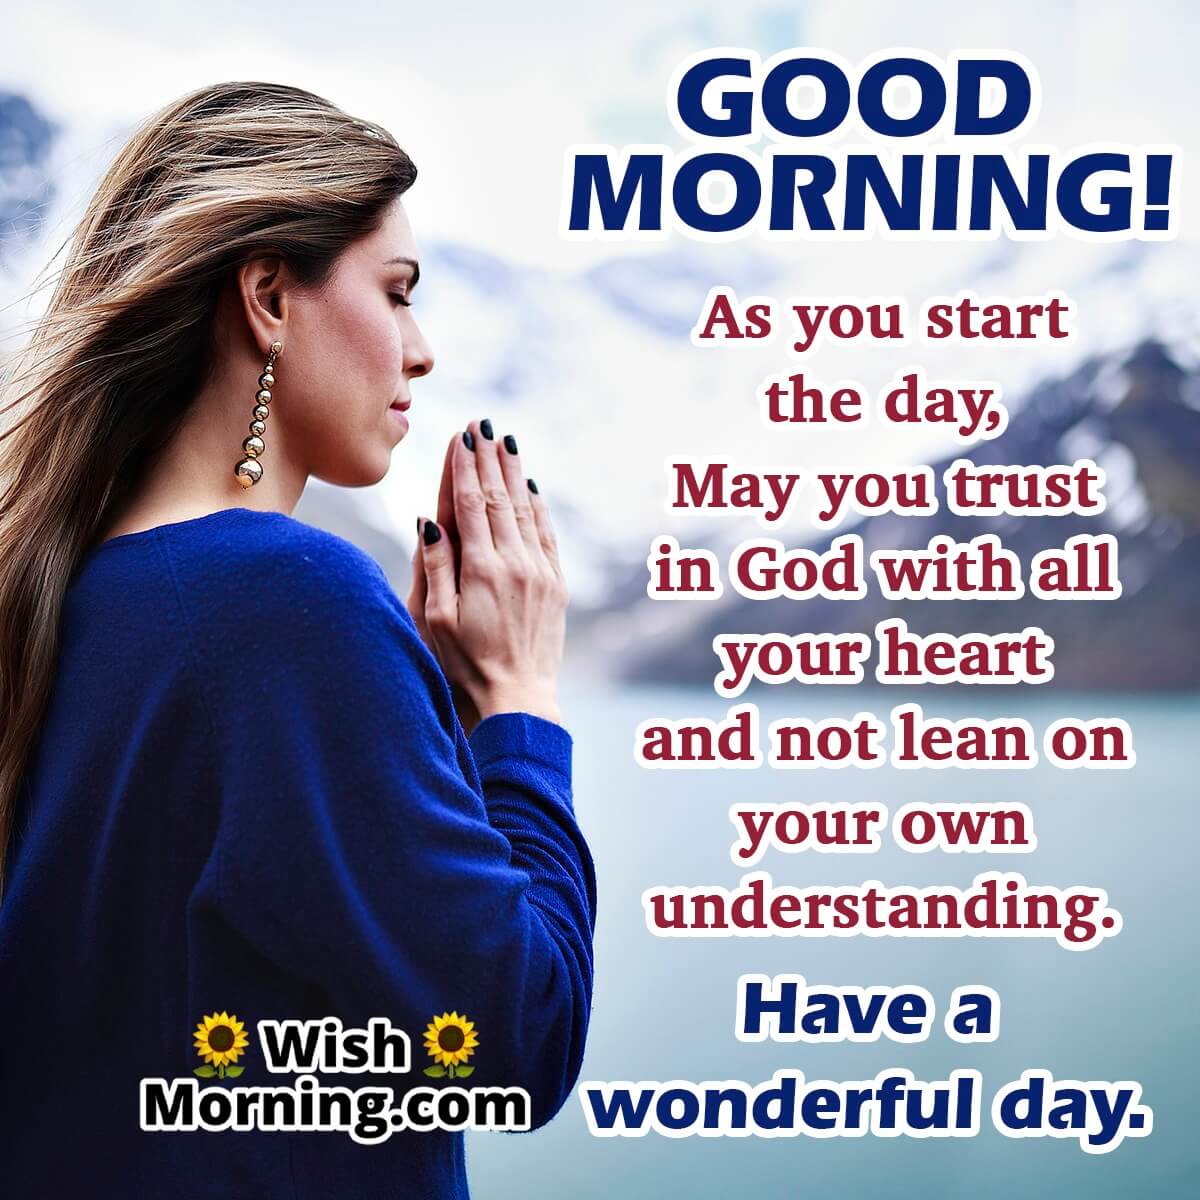 Good Morning Prayer Wishes - Wish Morning